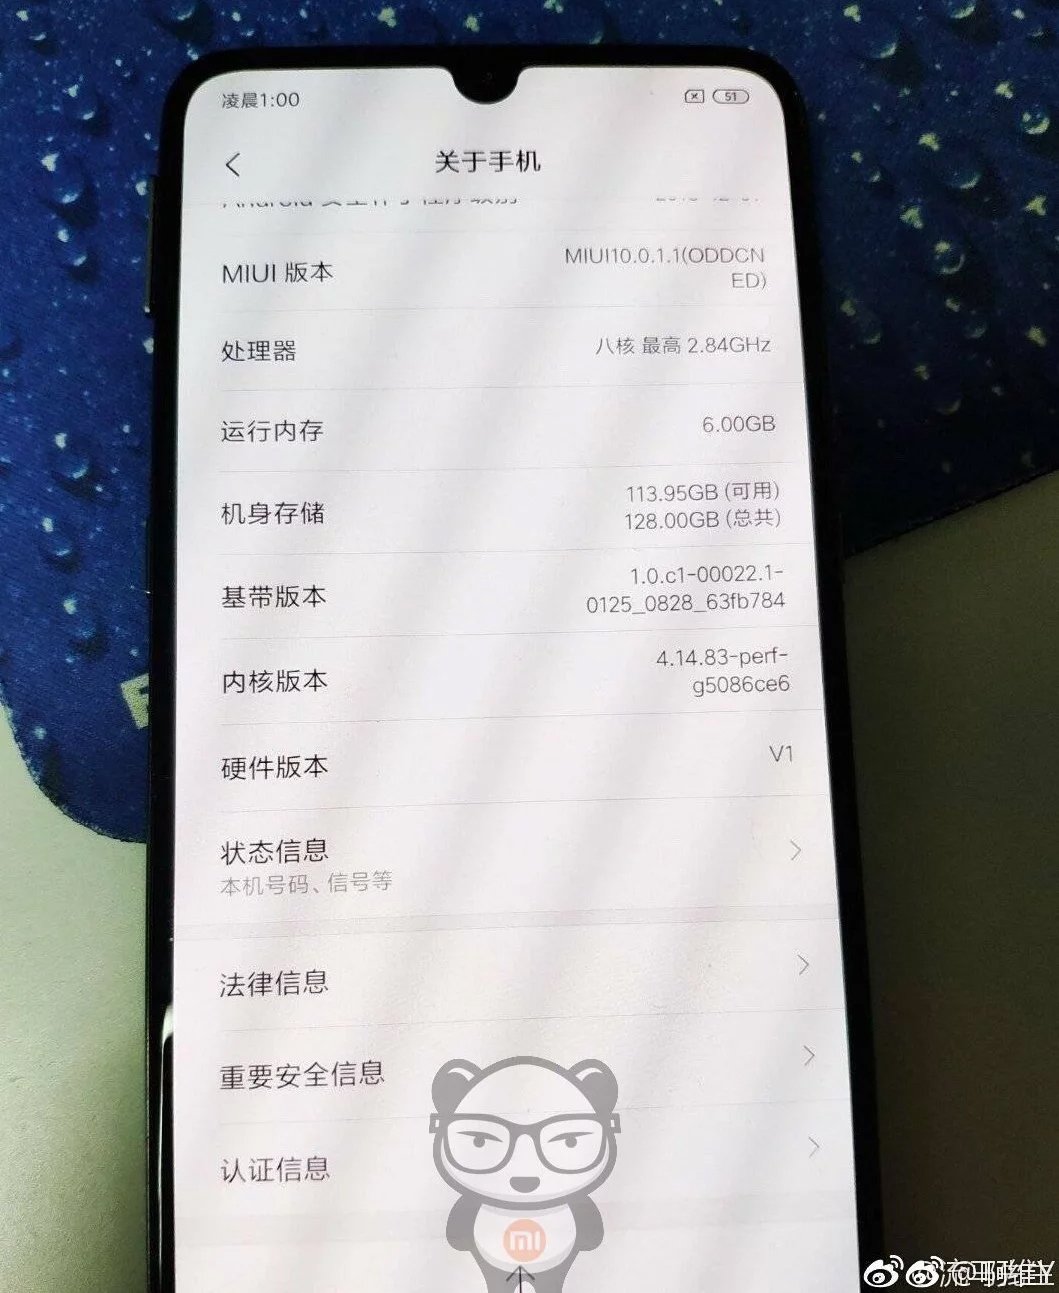 Xiaomi Mi 9 lộ ảnh thực tế: Màn hình giọt nước 6,4 inch, camera 48MP